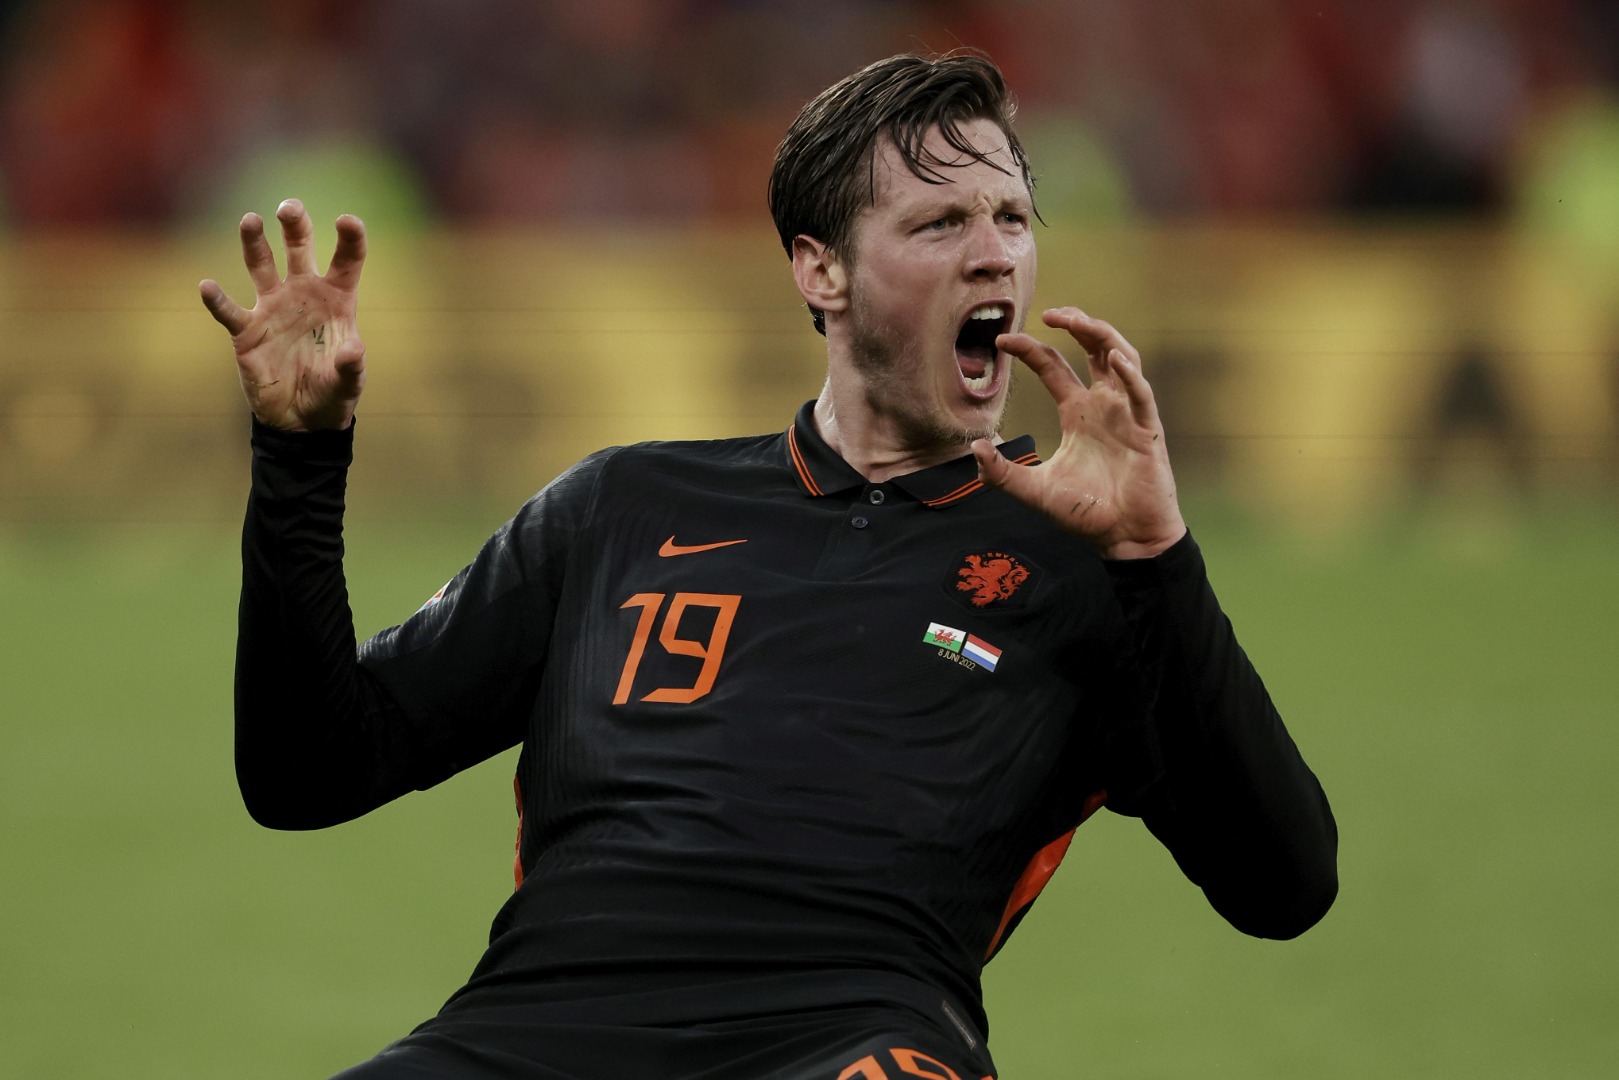 Beşiktaş'ın istediği Weghorst'tan müthiş gol: Hollanda'yı taşıdı, kartal pençesi yaptı